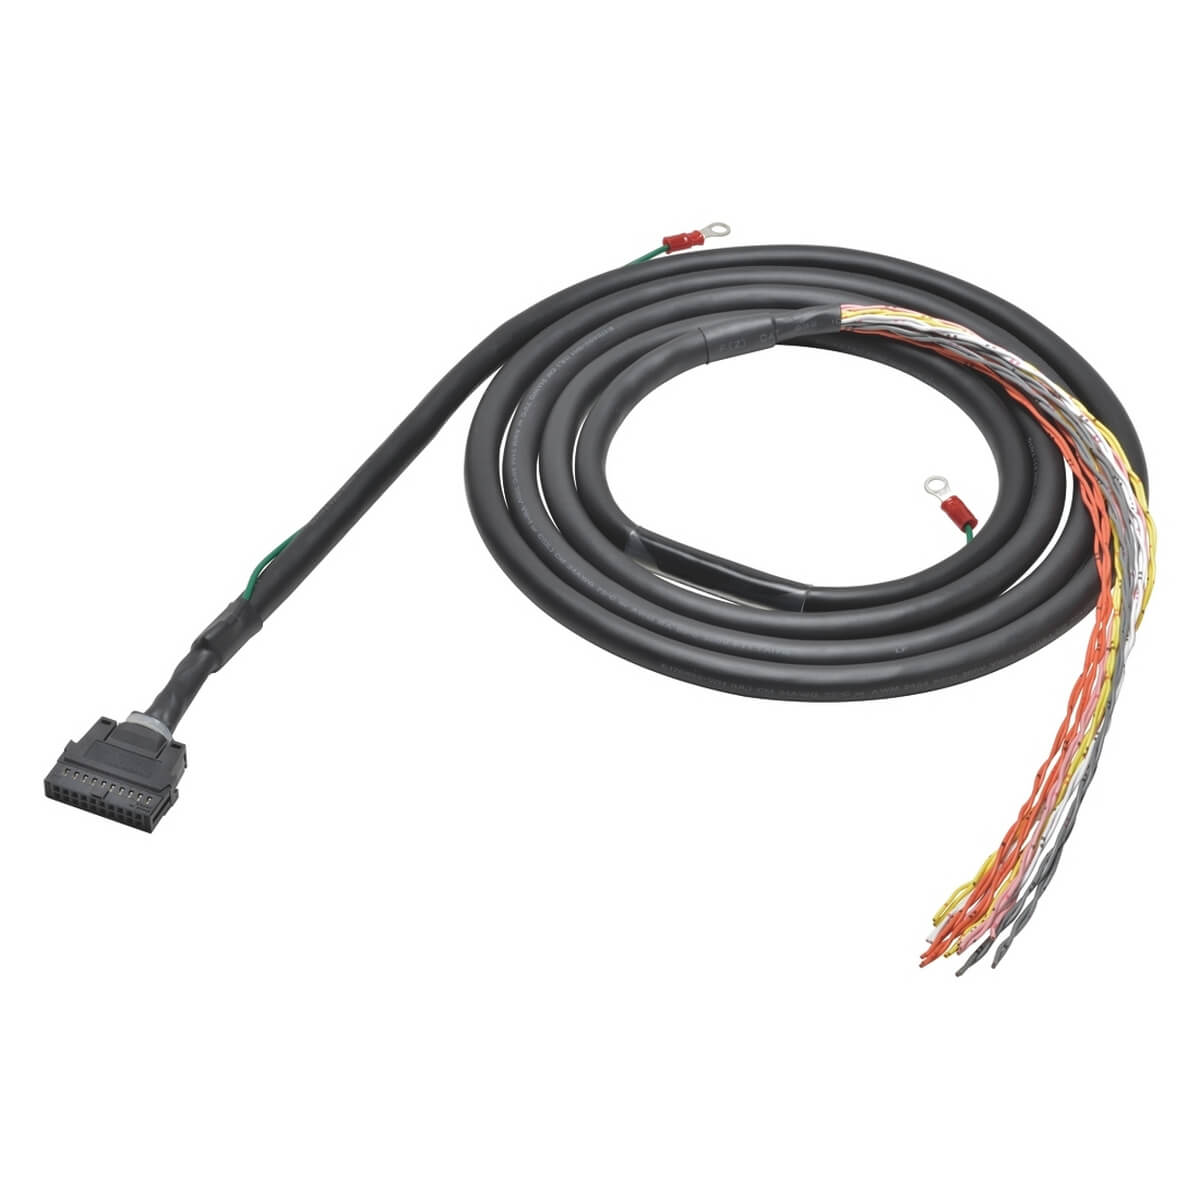 Kabel für E/A-Relaisklemmen [XW2Z-R]